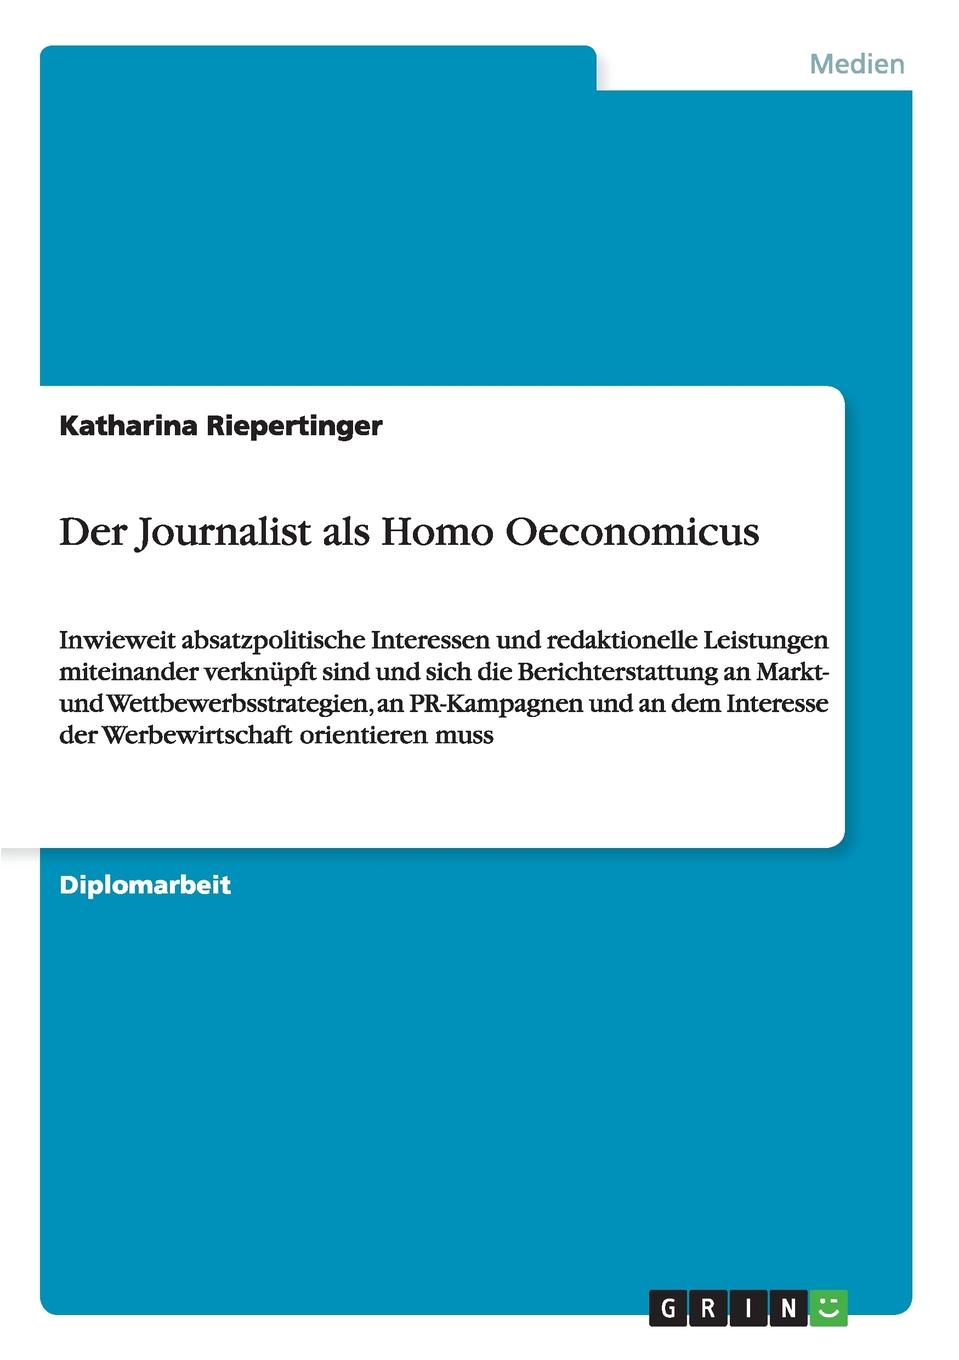 Der Journalist als Homo Oeconomicus